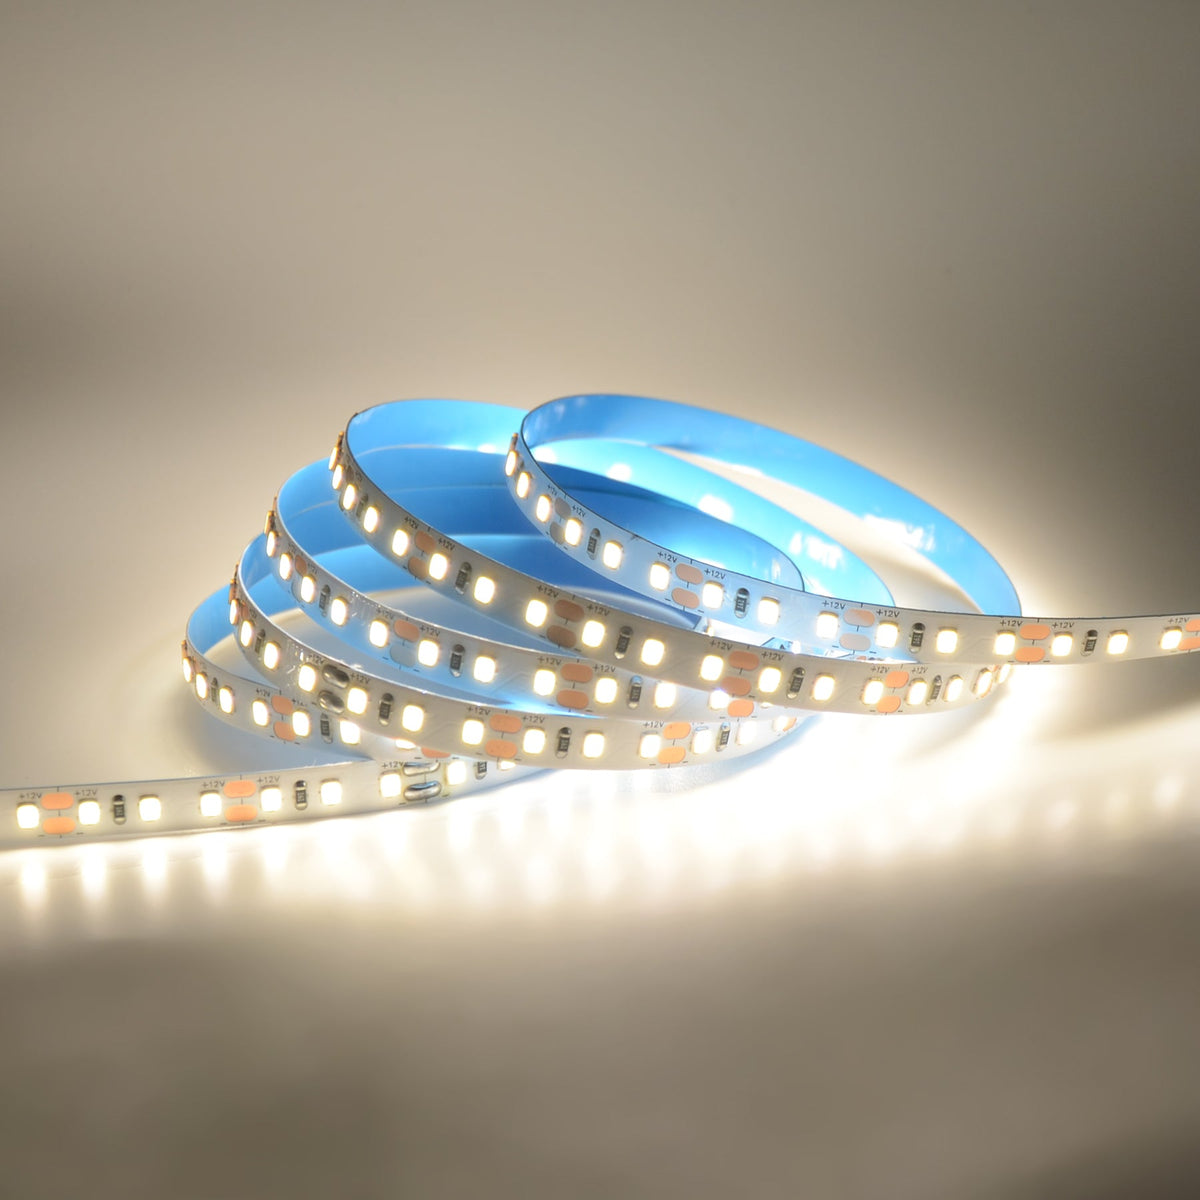 G.W.S. LED LED Strip Lights Strip Only / 5M / Neutral White (4000K) LED 2835 Strip Light, 5M Reel, IP20, 12V, 120 LEDs/M